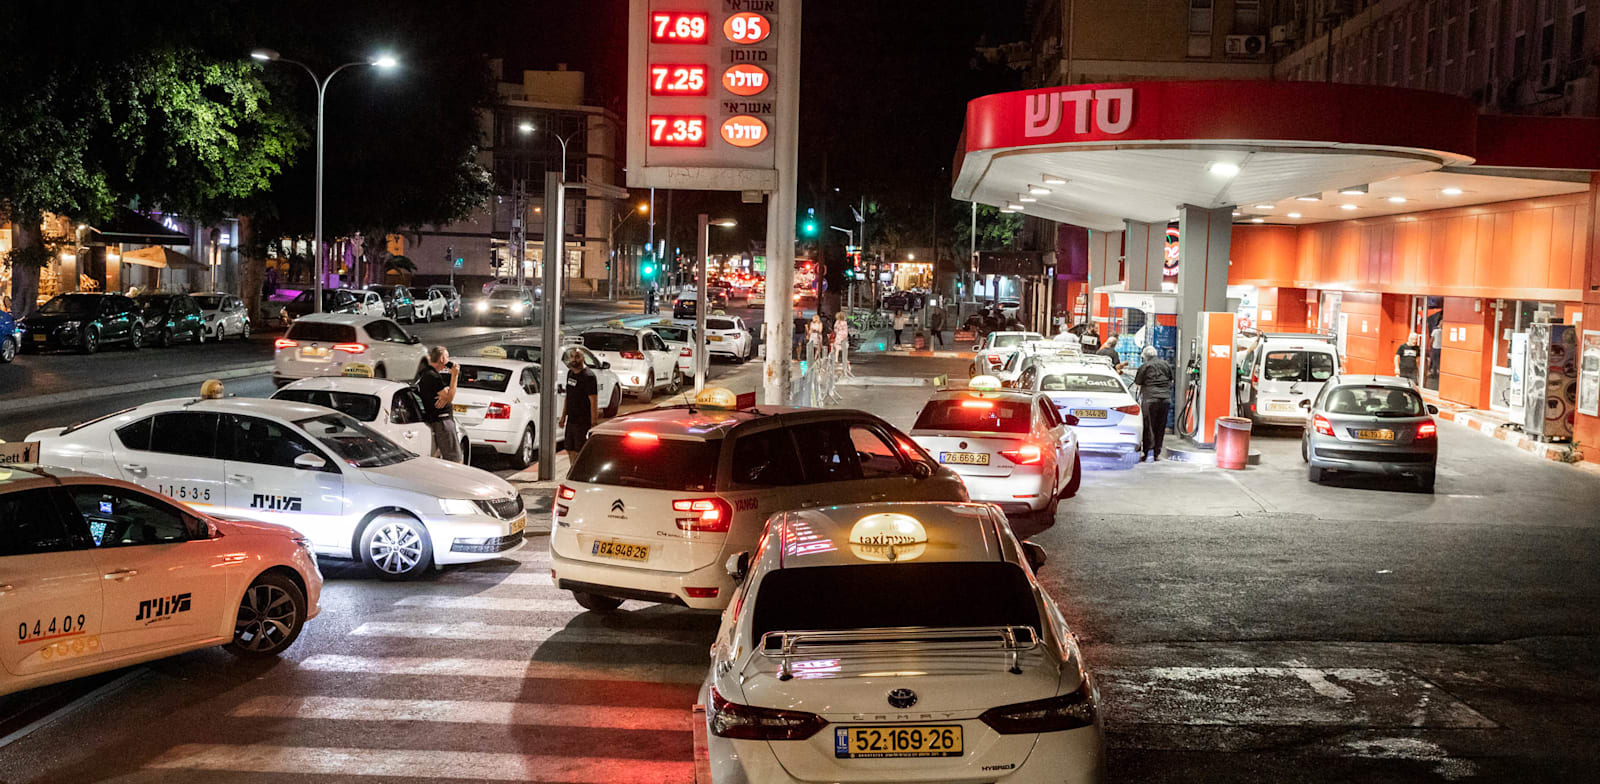 עומס בתחנת דלק טרם עליית המחירים / צילום: כדיה לוי